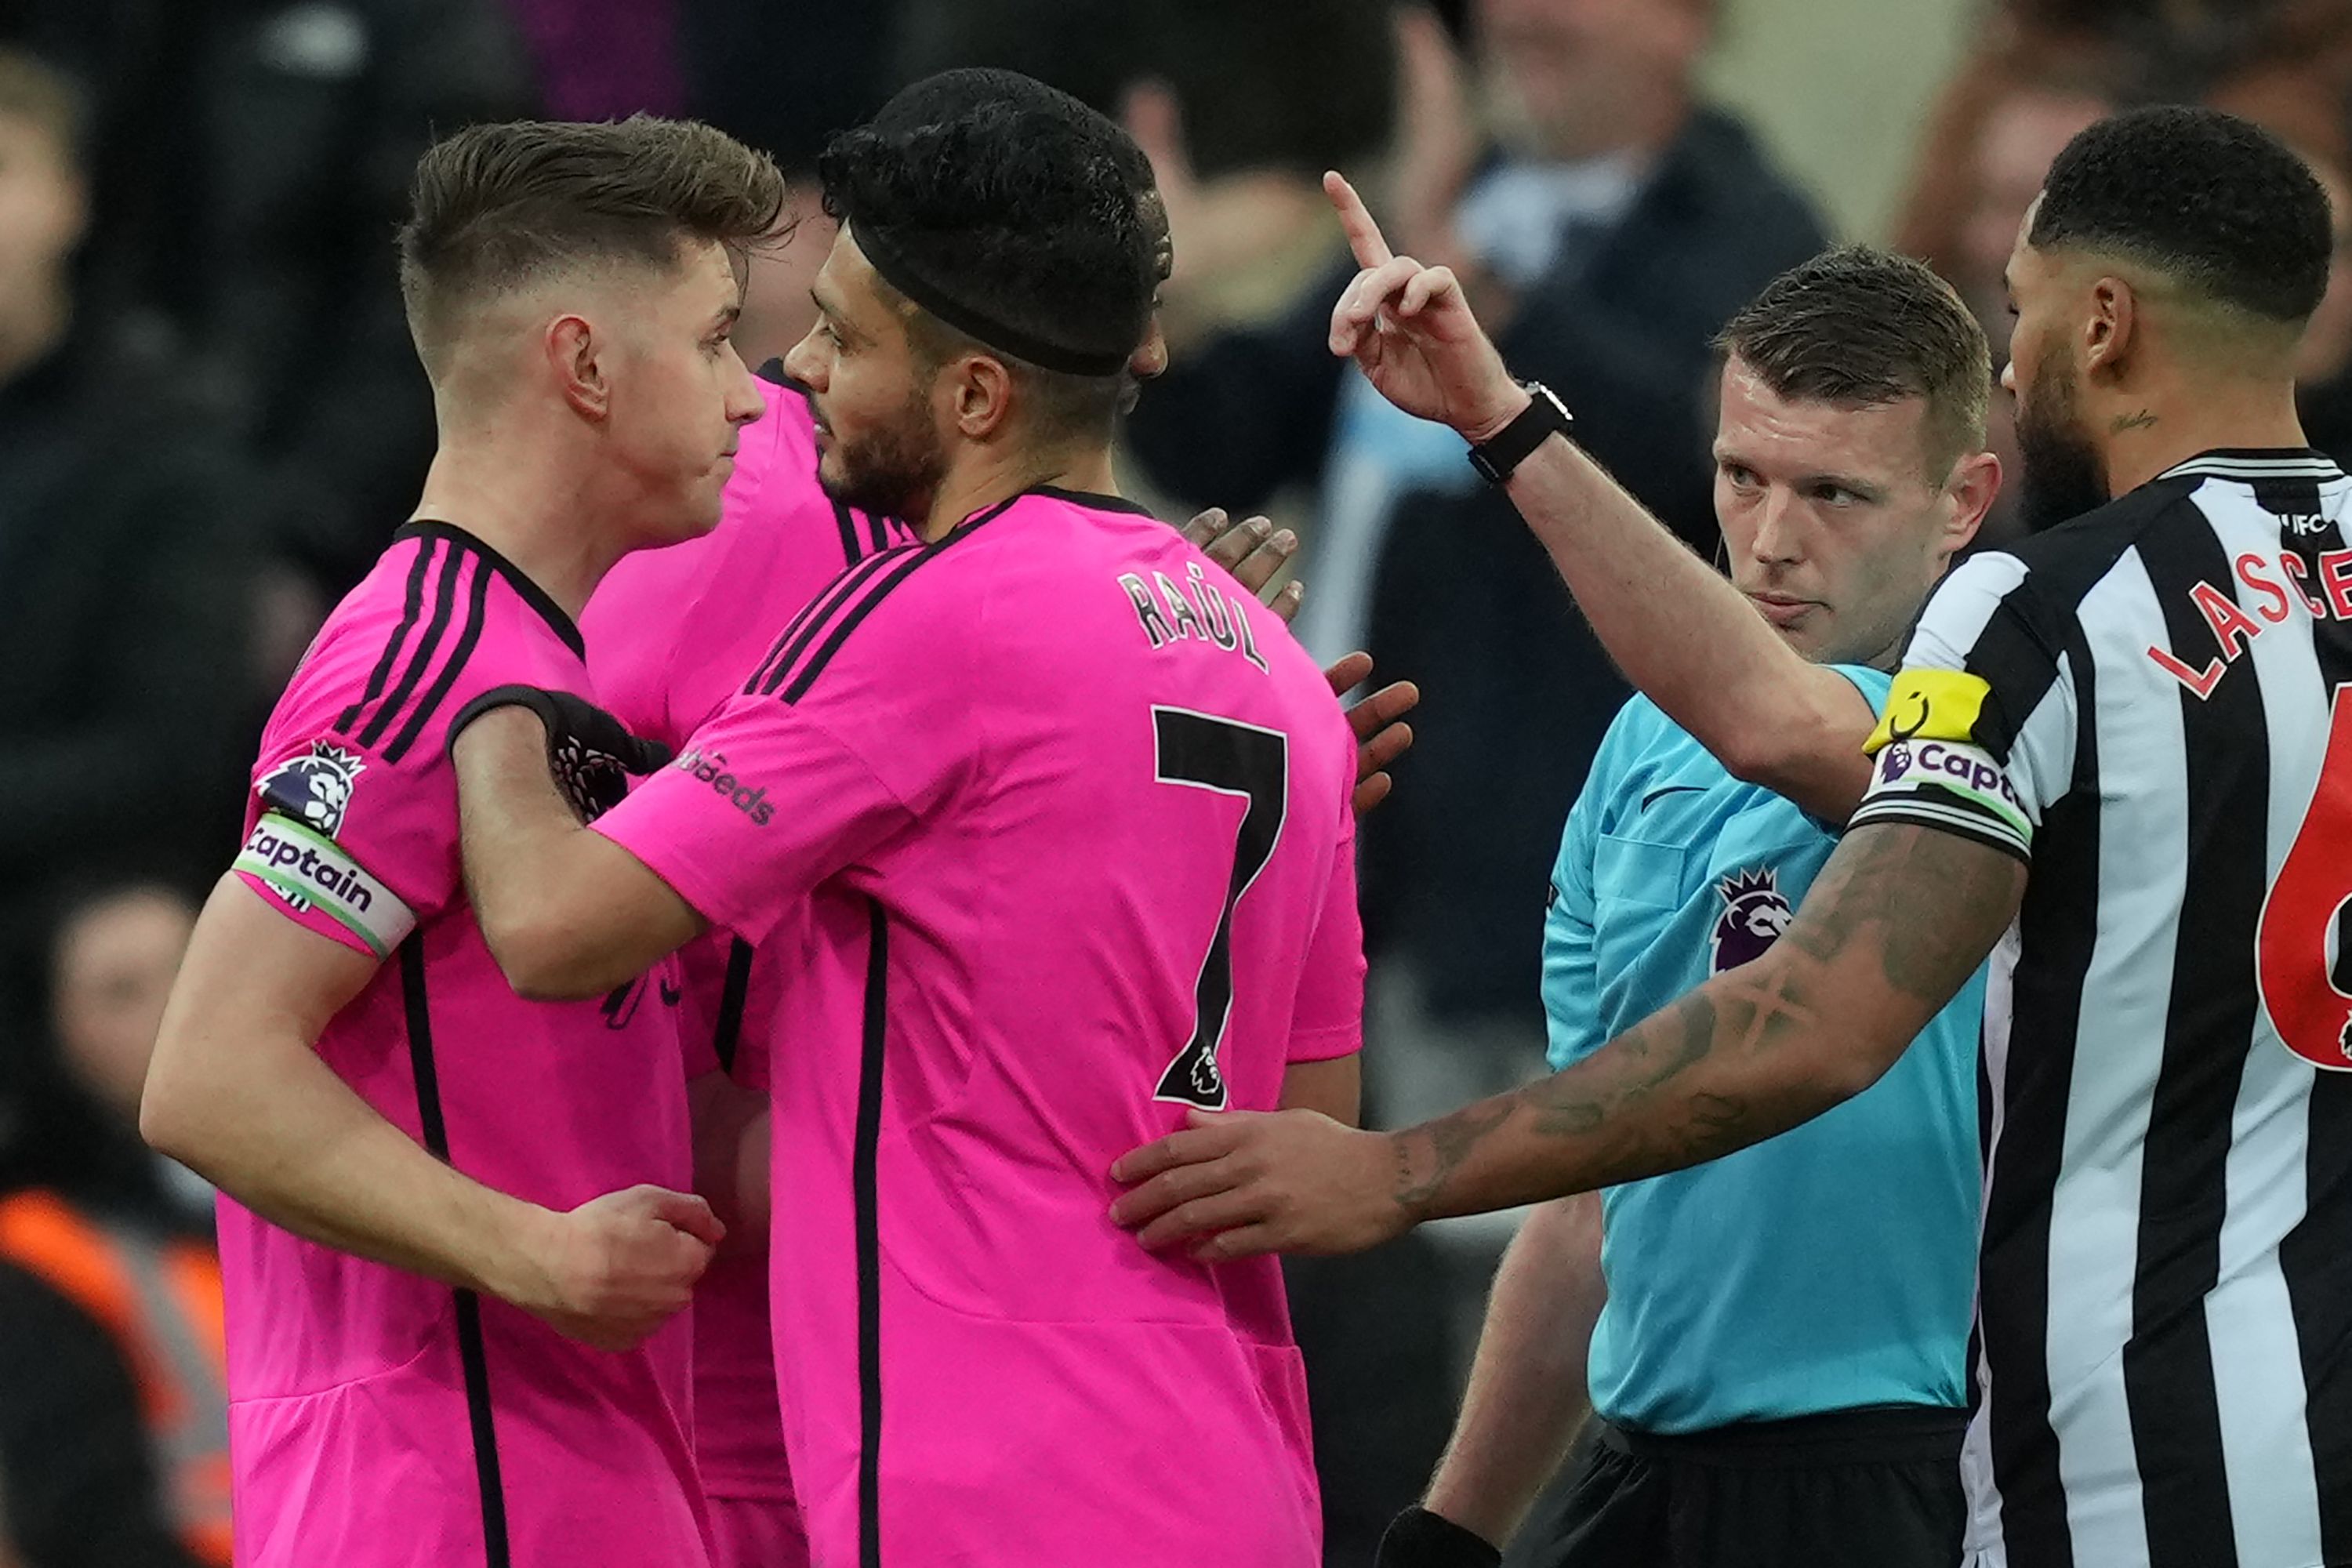 El delantero del Fulham, Raúl Jiménez (7) reacciona tras ser excluido por el árbitro, Samuel Barrott, en el partido ante el Newcastle United. (Foto Prensa Libre: AFP)